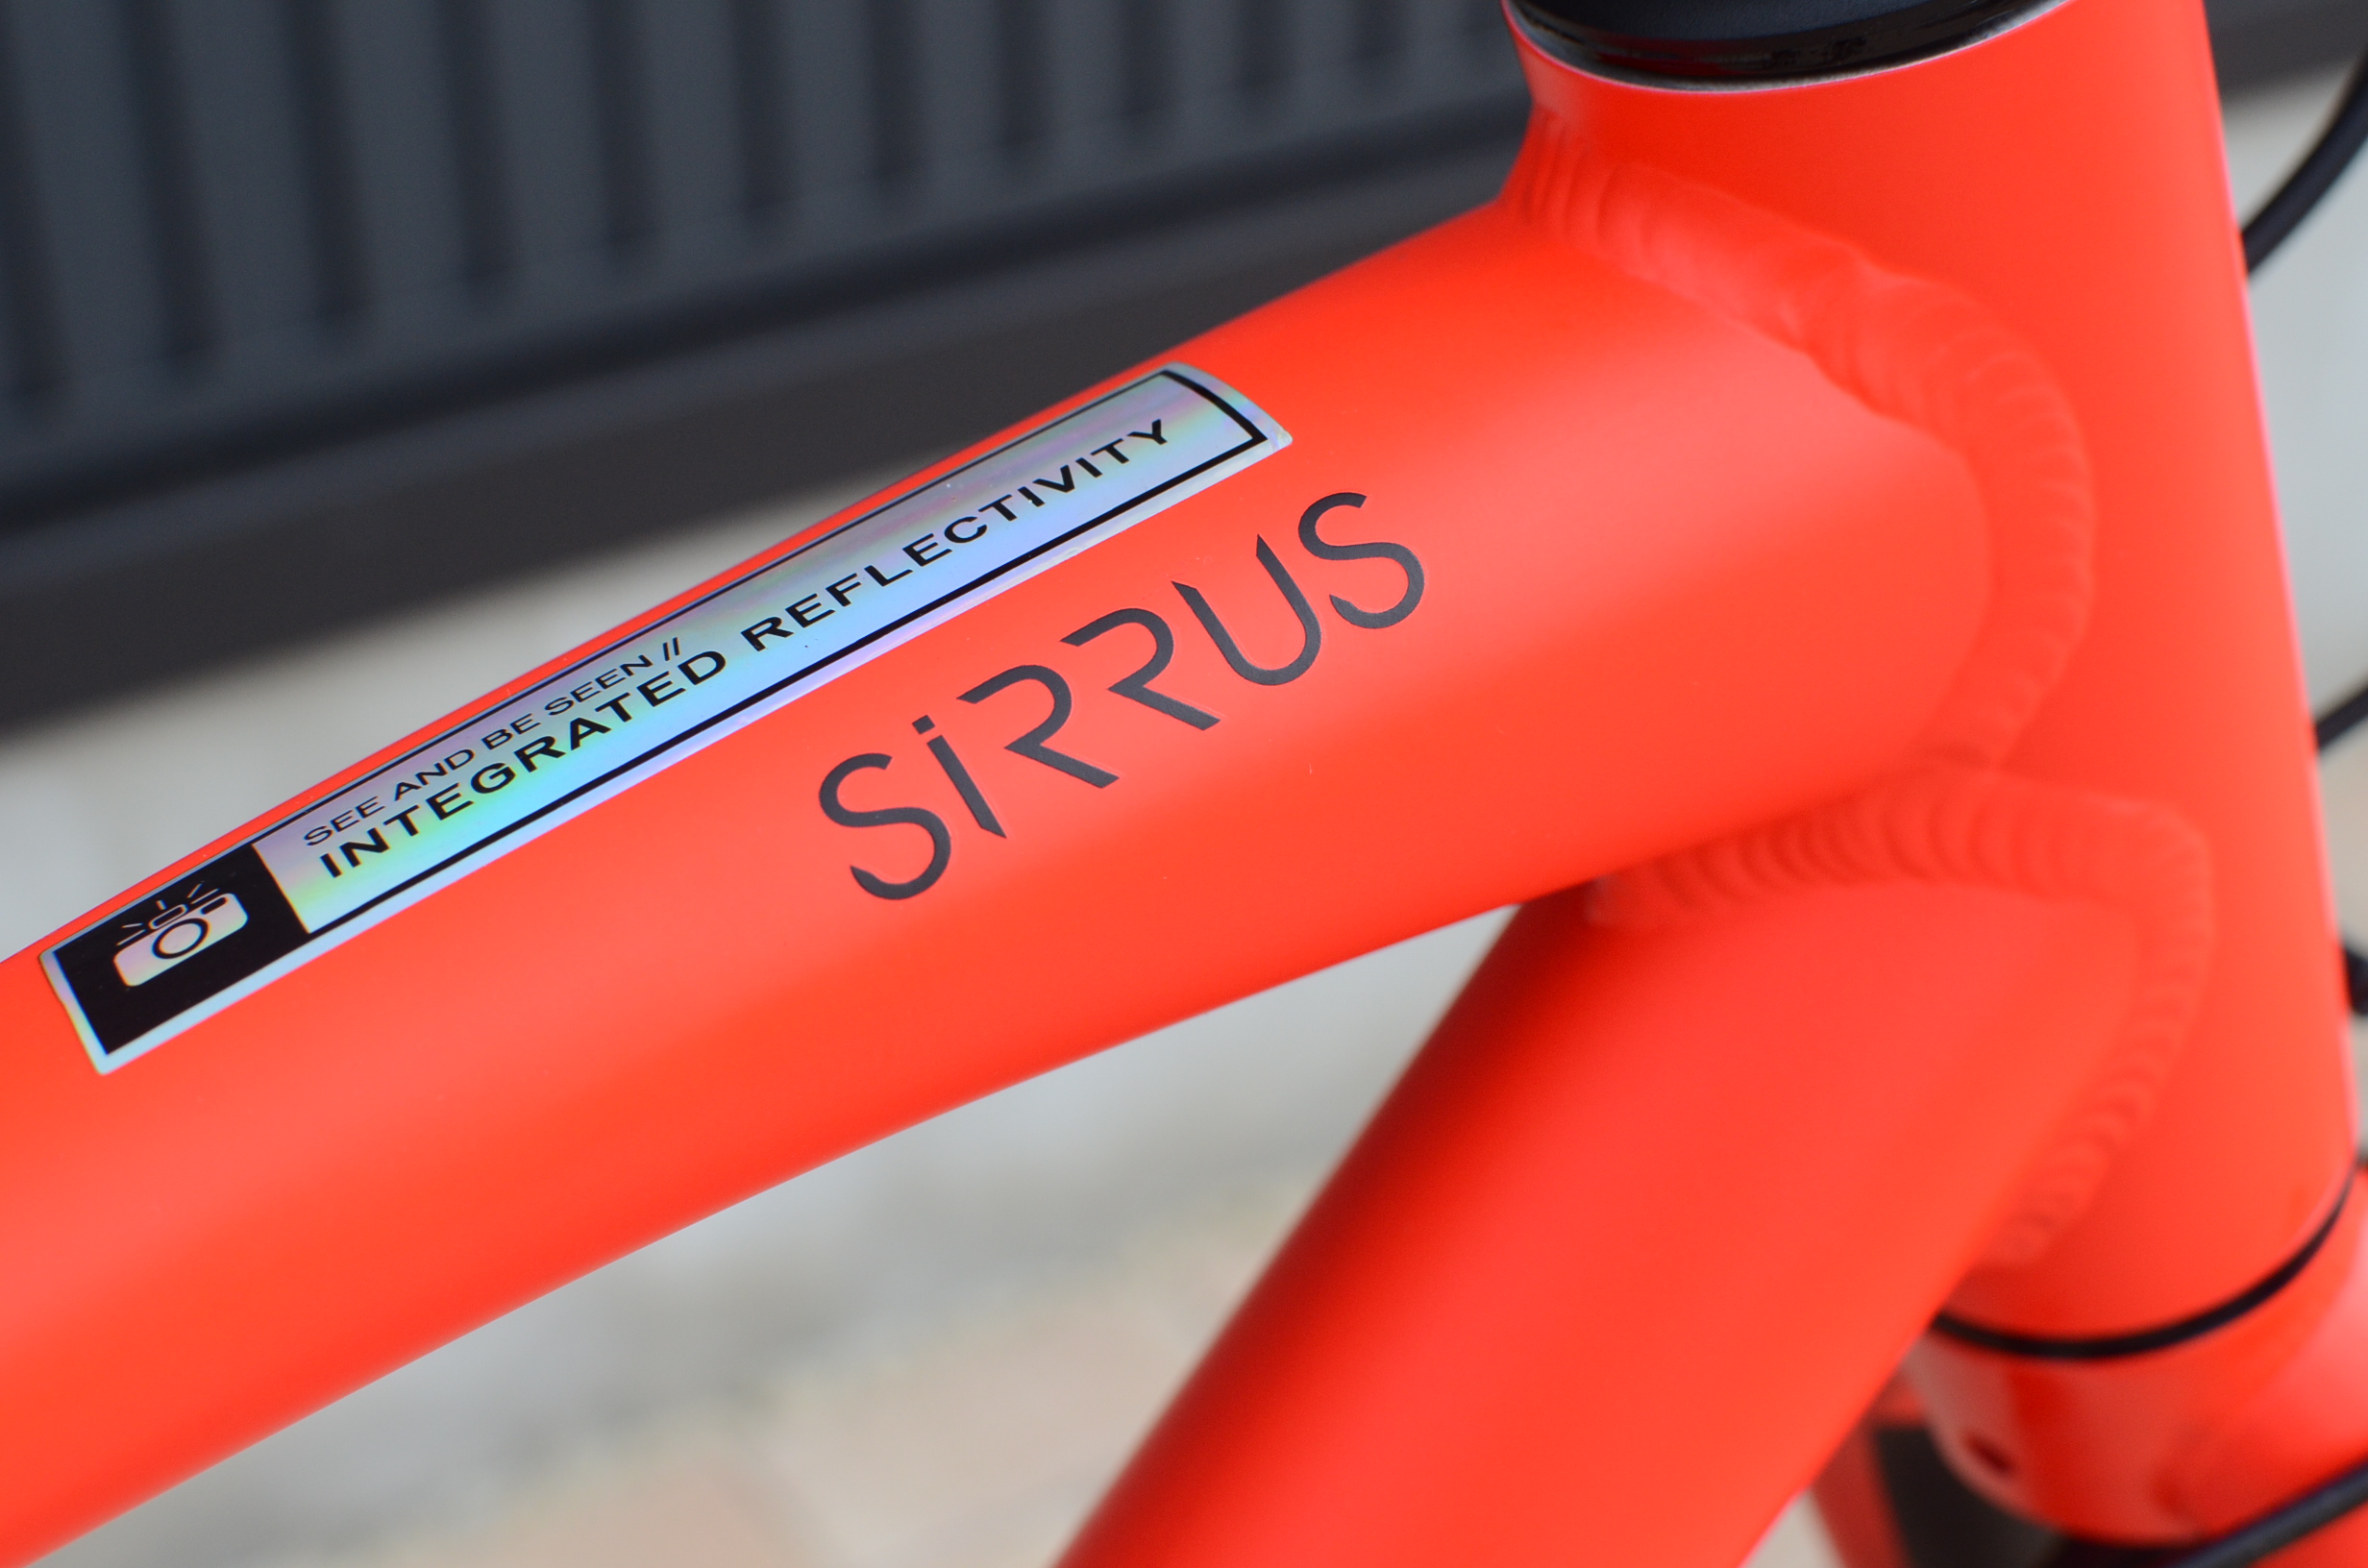 エントリークロスバイク「SIRRUS」(シラス)2018年モデル入荷 